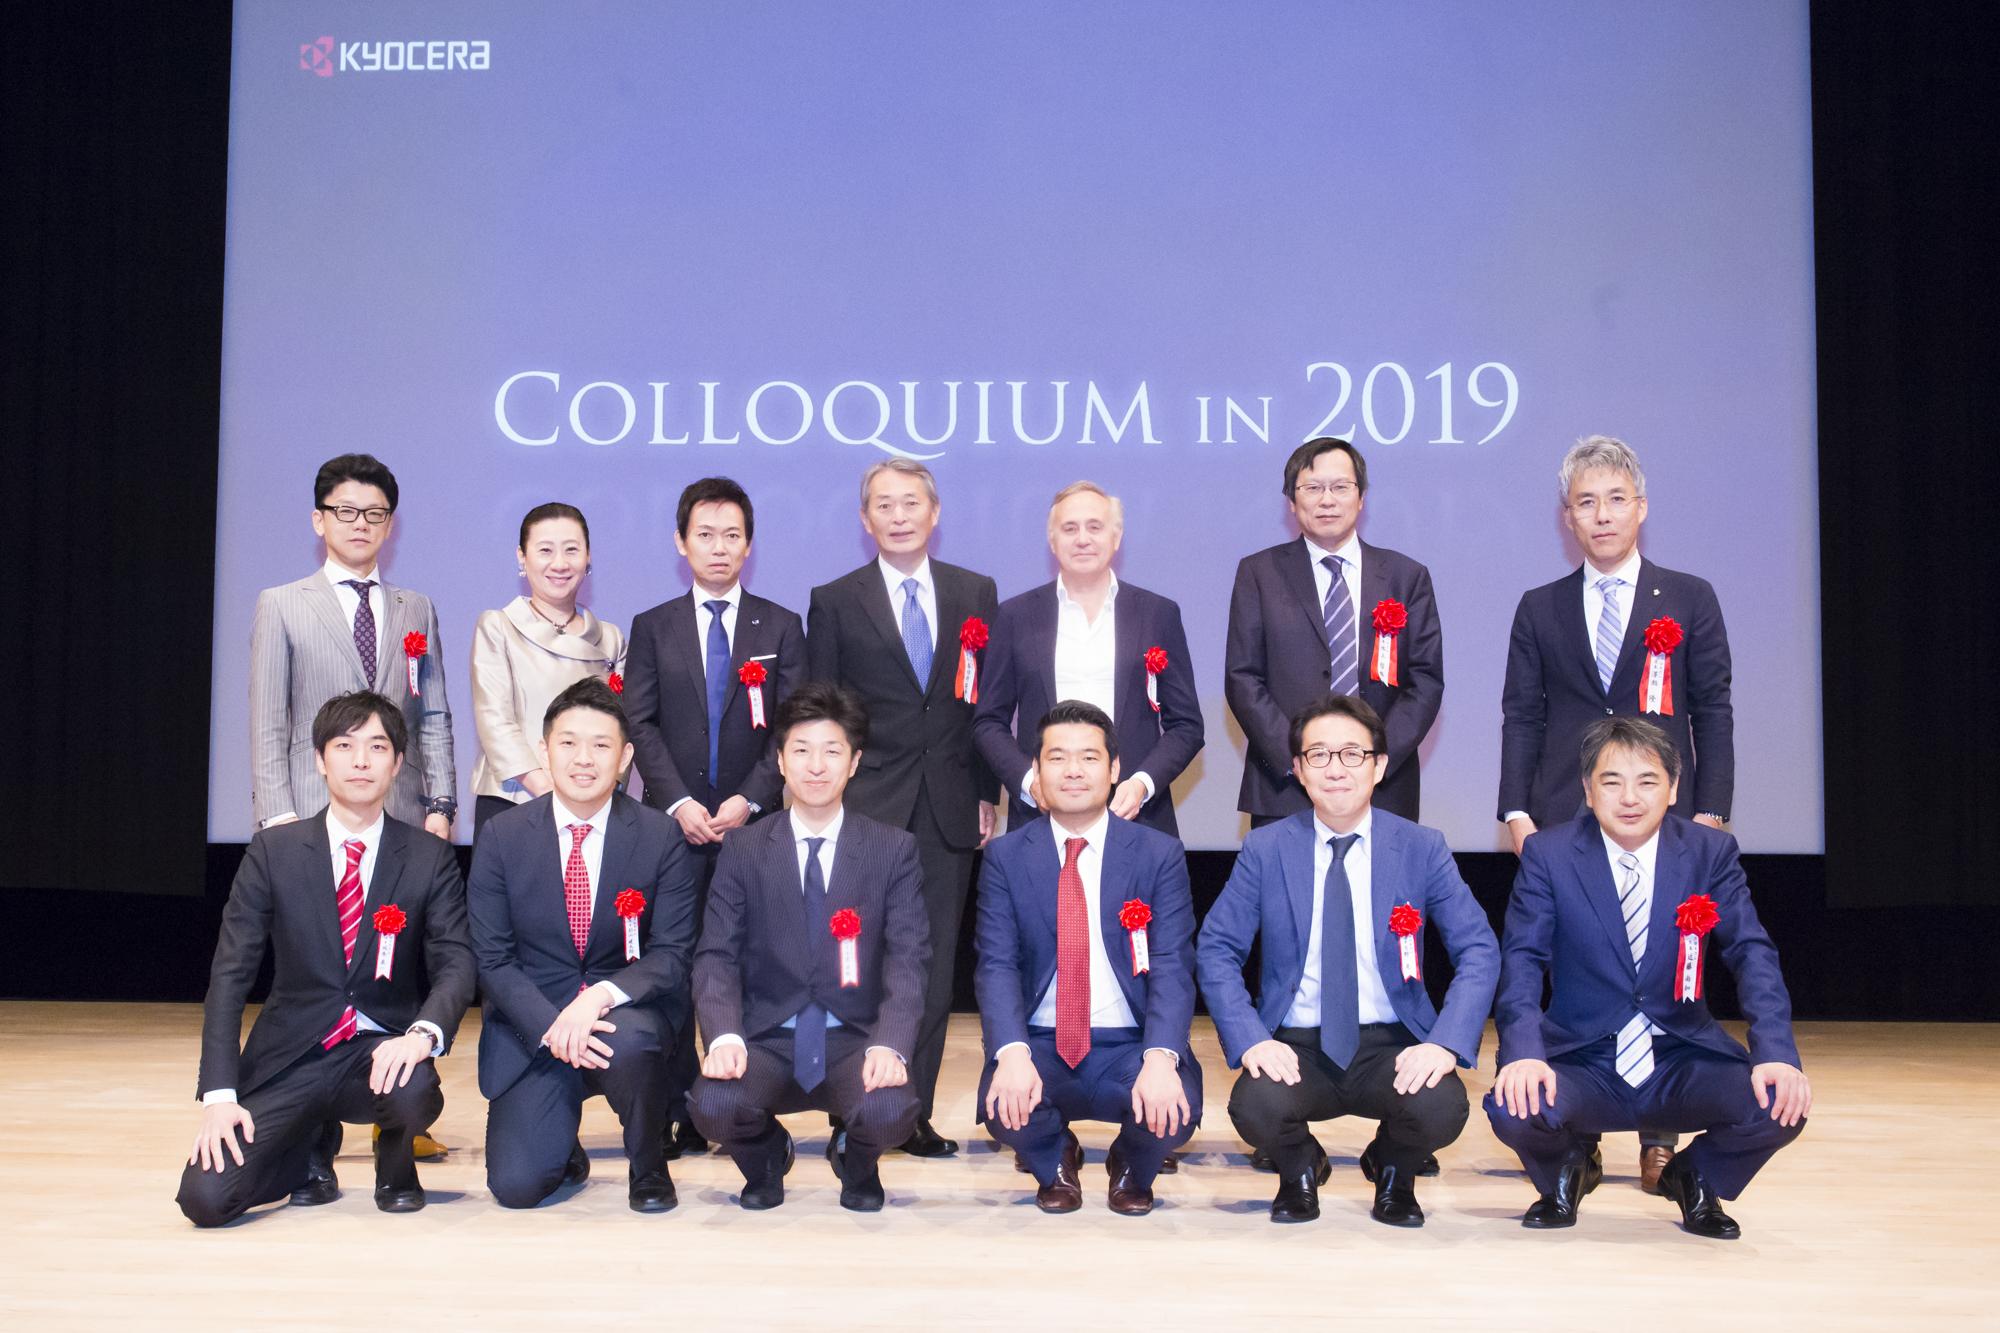 【御礼】COLLOQUIUM IN 2019